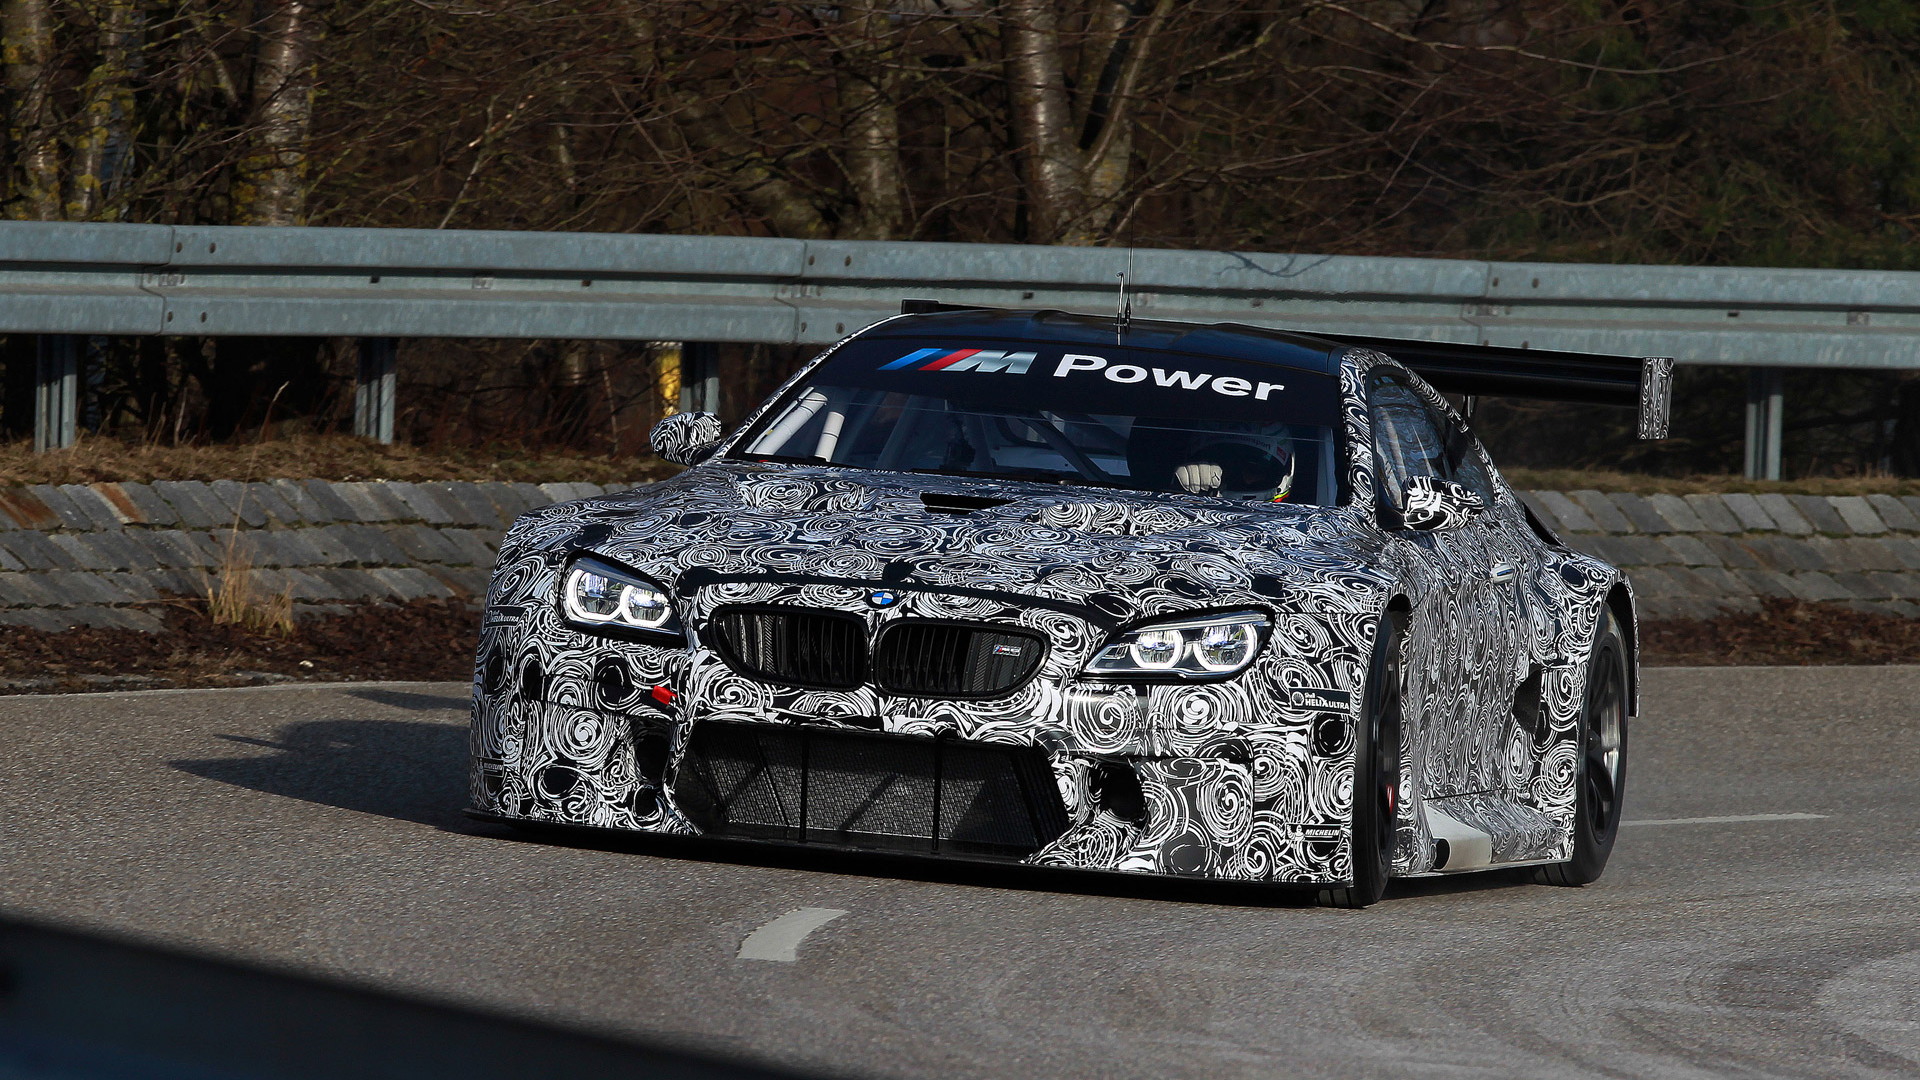 2016 BMW M6 GT3 race car